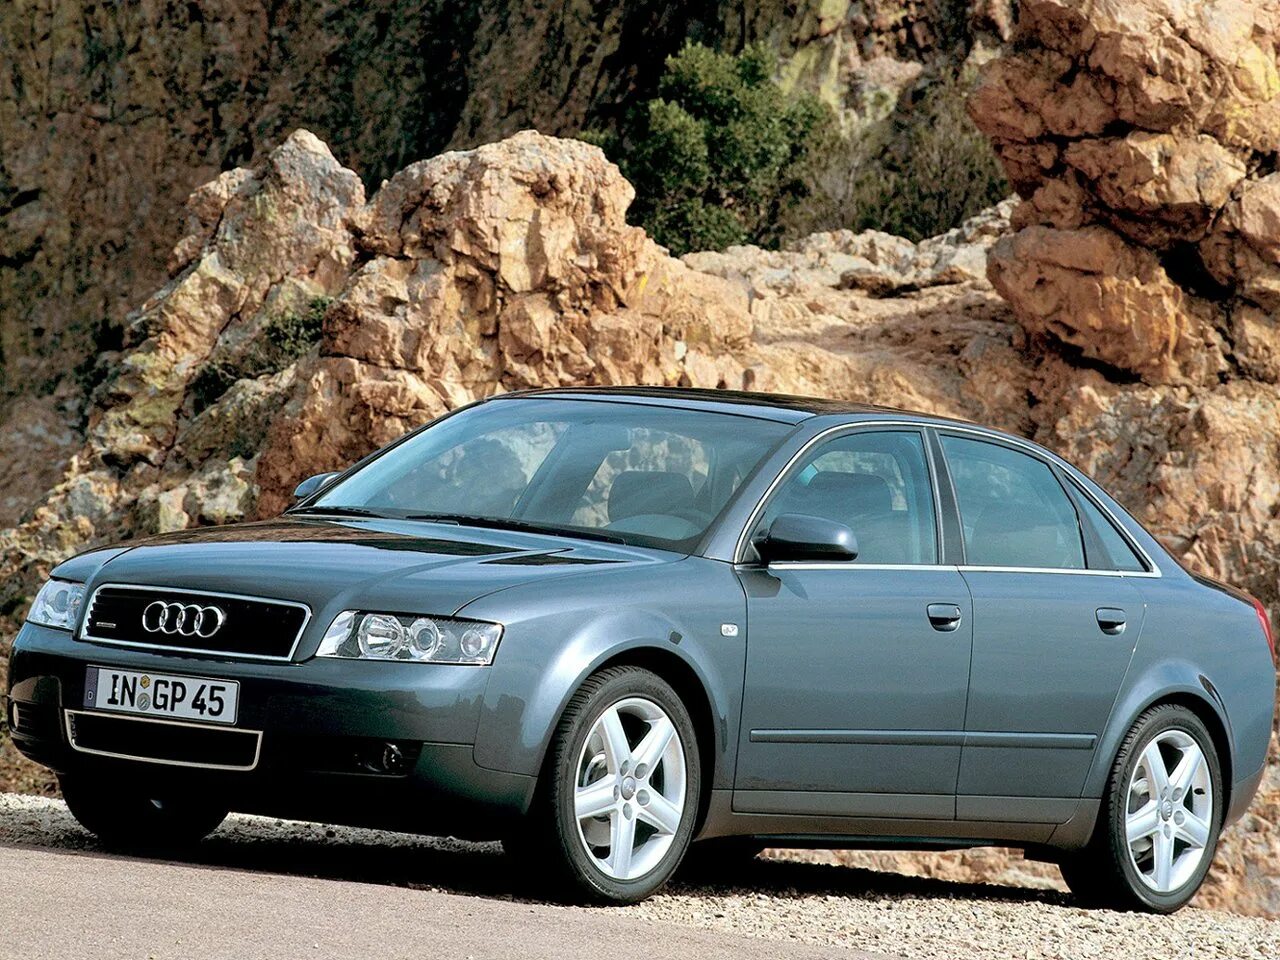 Ауди 6 2000 годов. Audi a4 b6 2002. Audi a4 b6 2000. Audi a4 b6 2004. Ауди а4 кватро 2000.